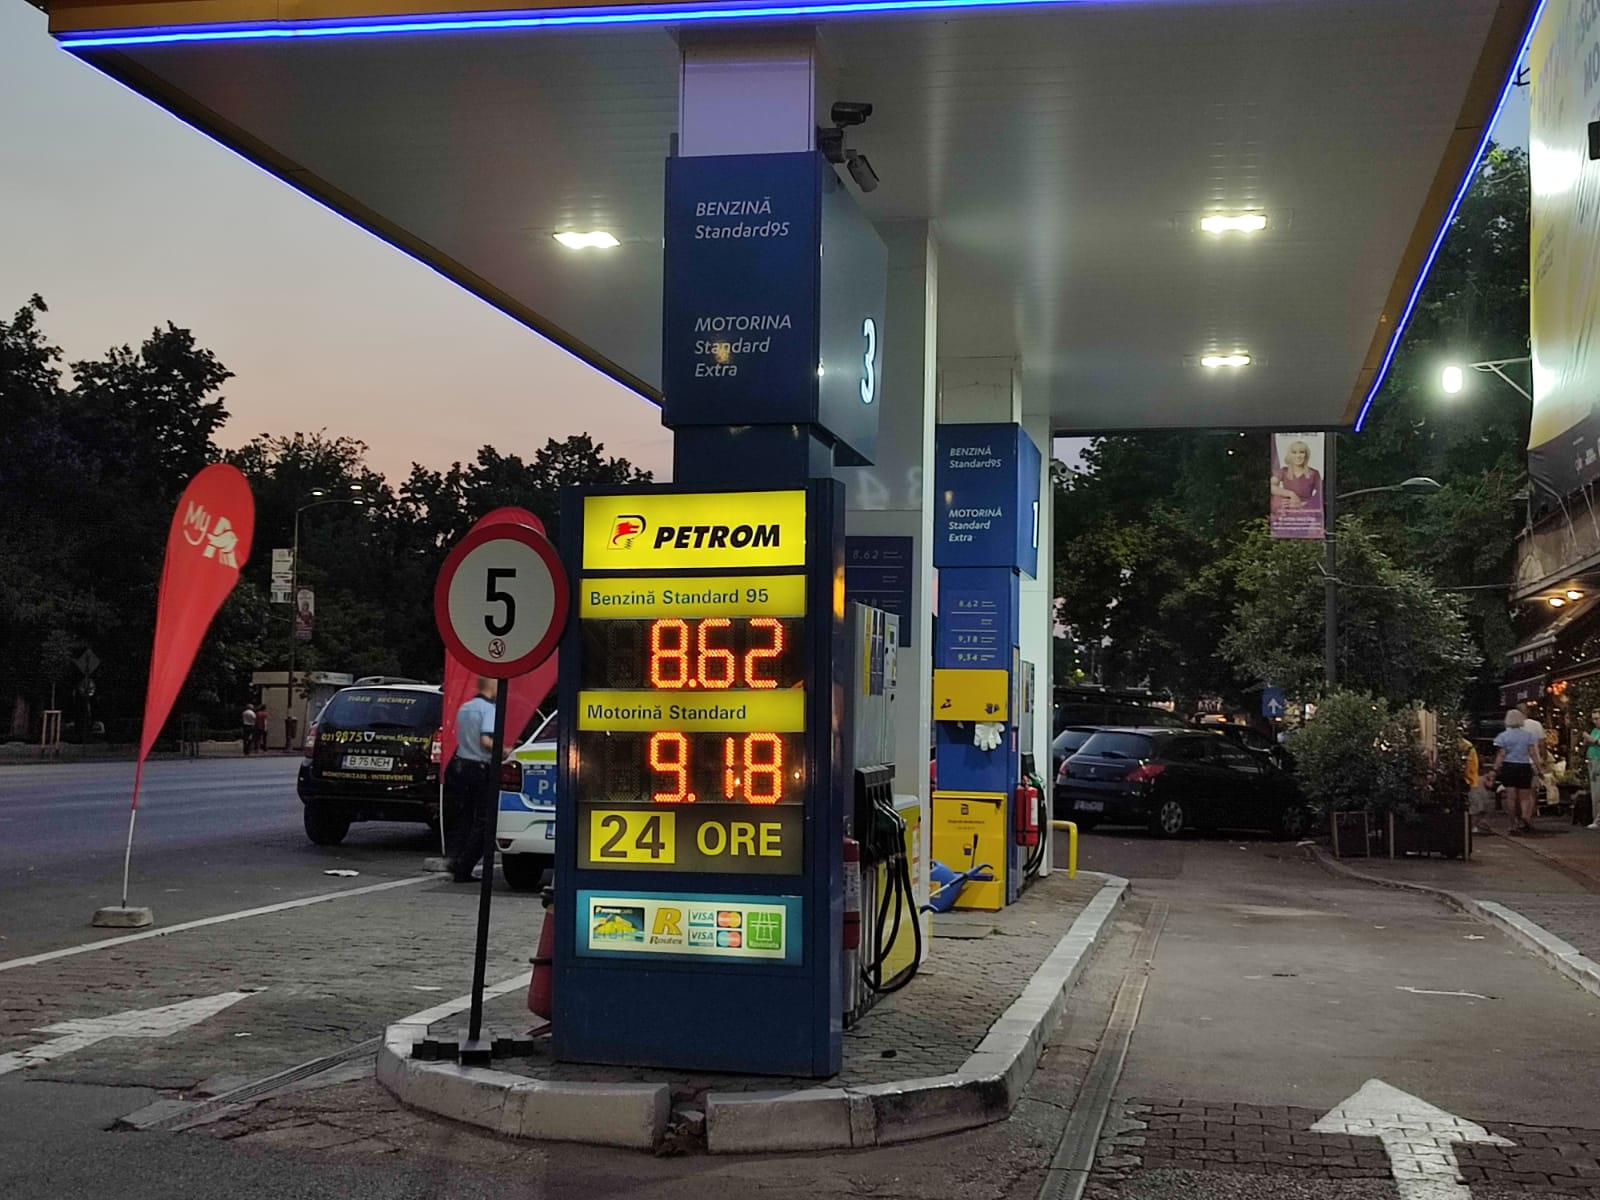 Guvernul promite ieftinire, benzinarii păstrează sus prețurile: O singură rețea acordă reducerea de 50 de bani